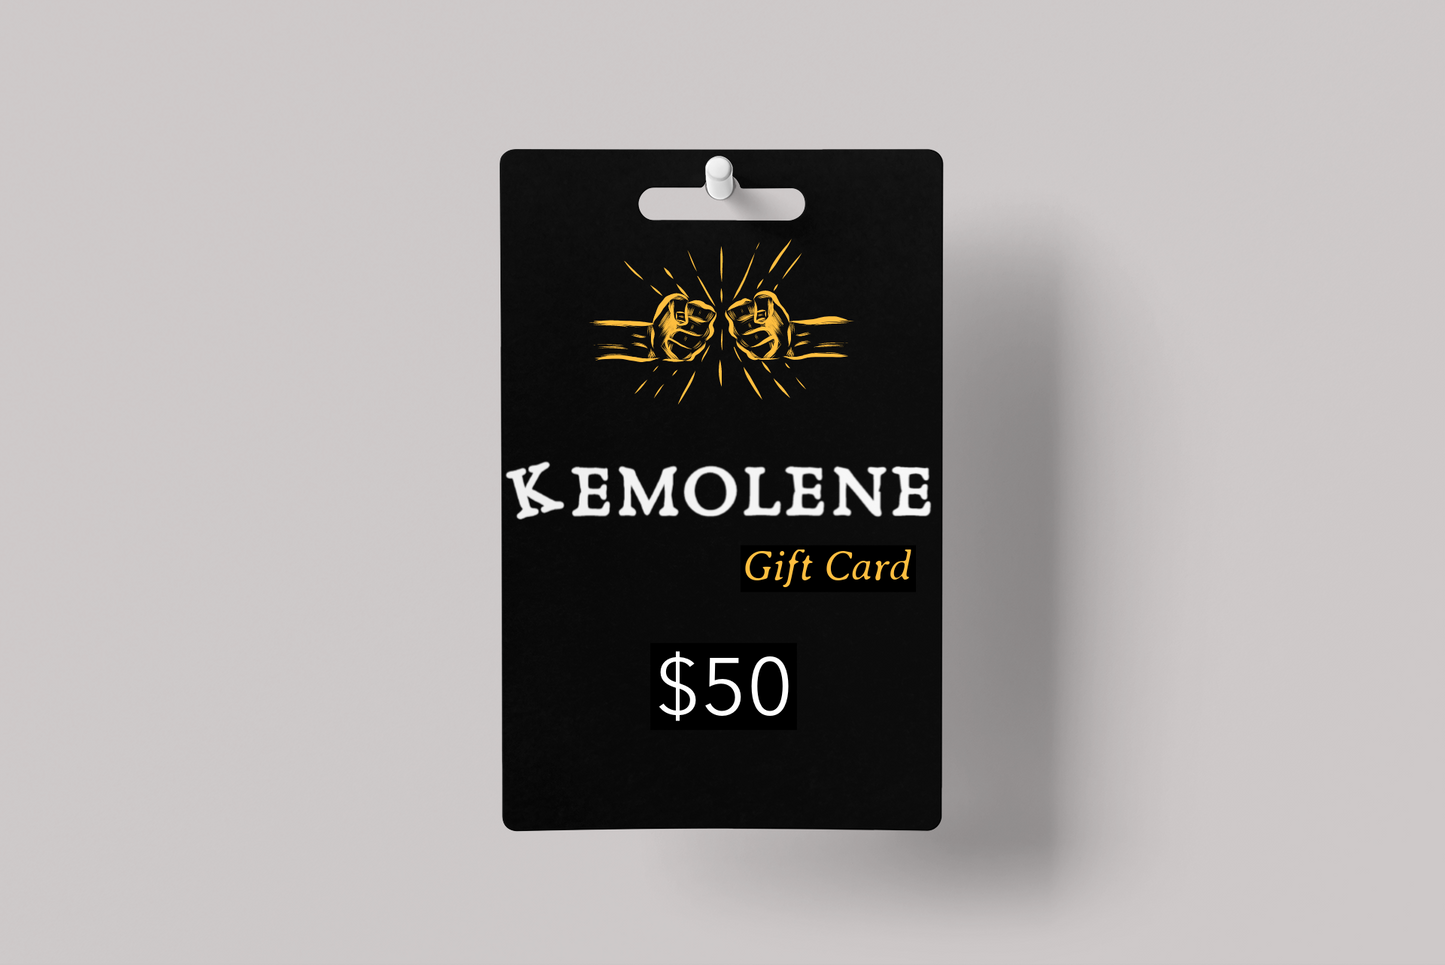 KEMOLENE e-gift card